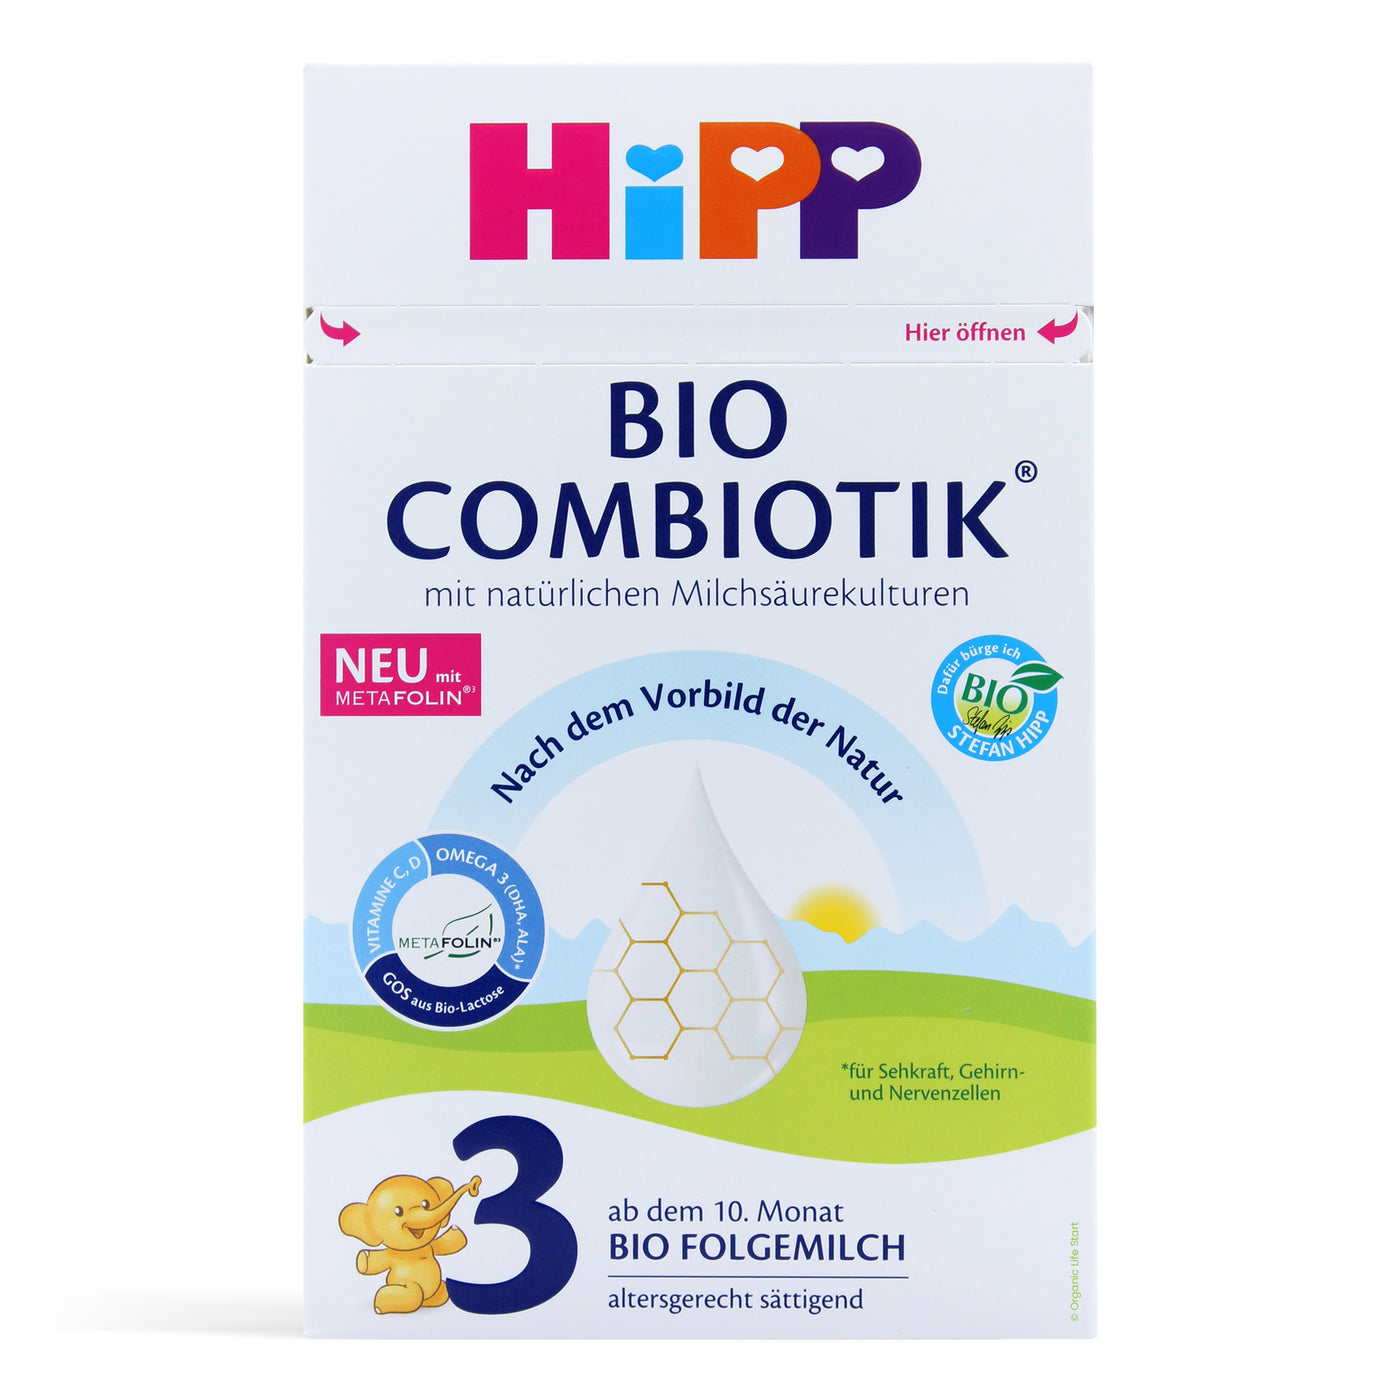 HiPP HA 2 Combiotic, 3 boxes